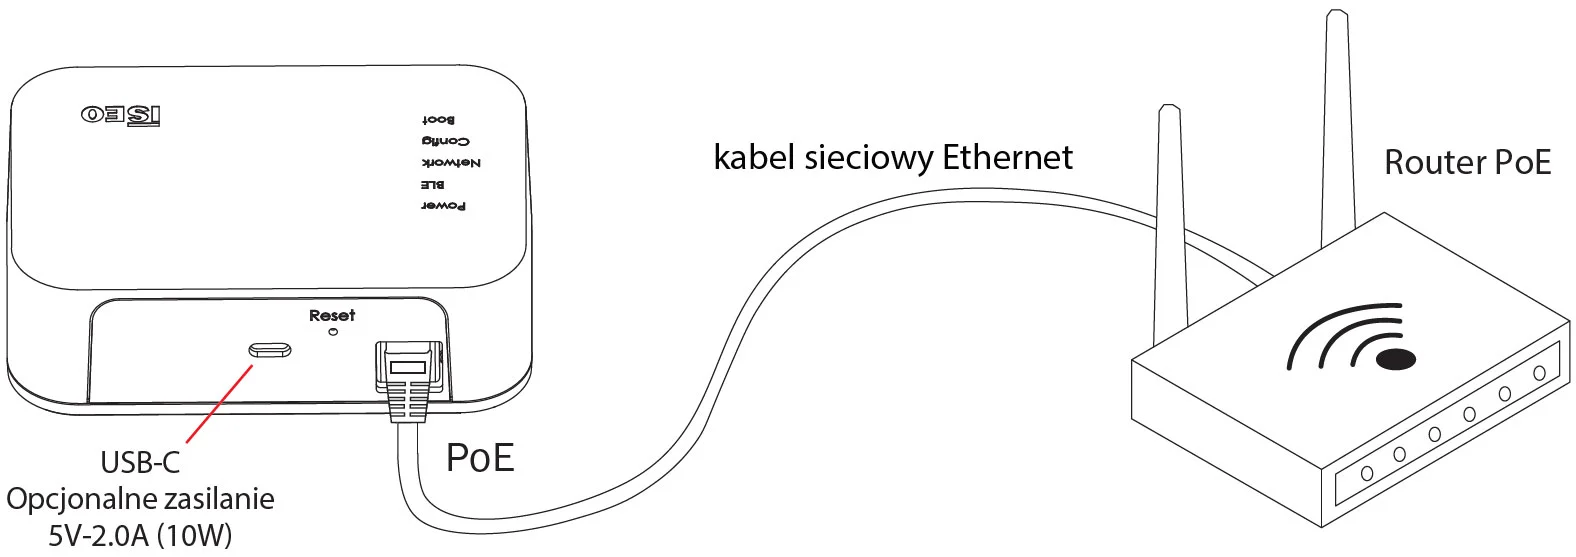 Smart Gateway - podlaczenie do routera PoE